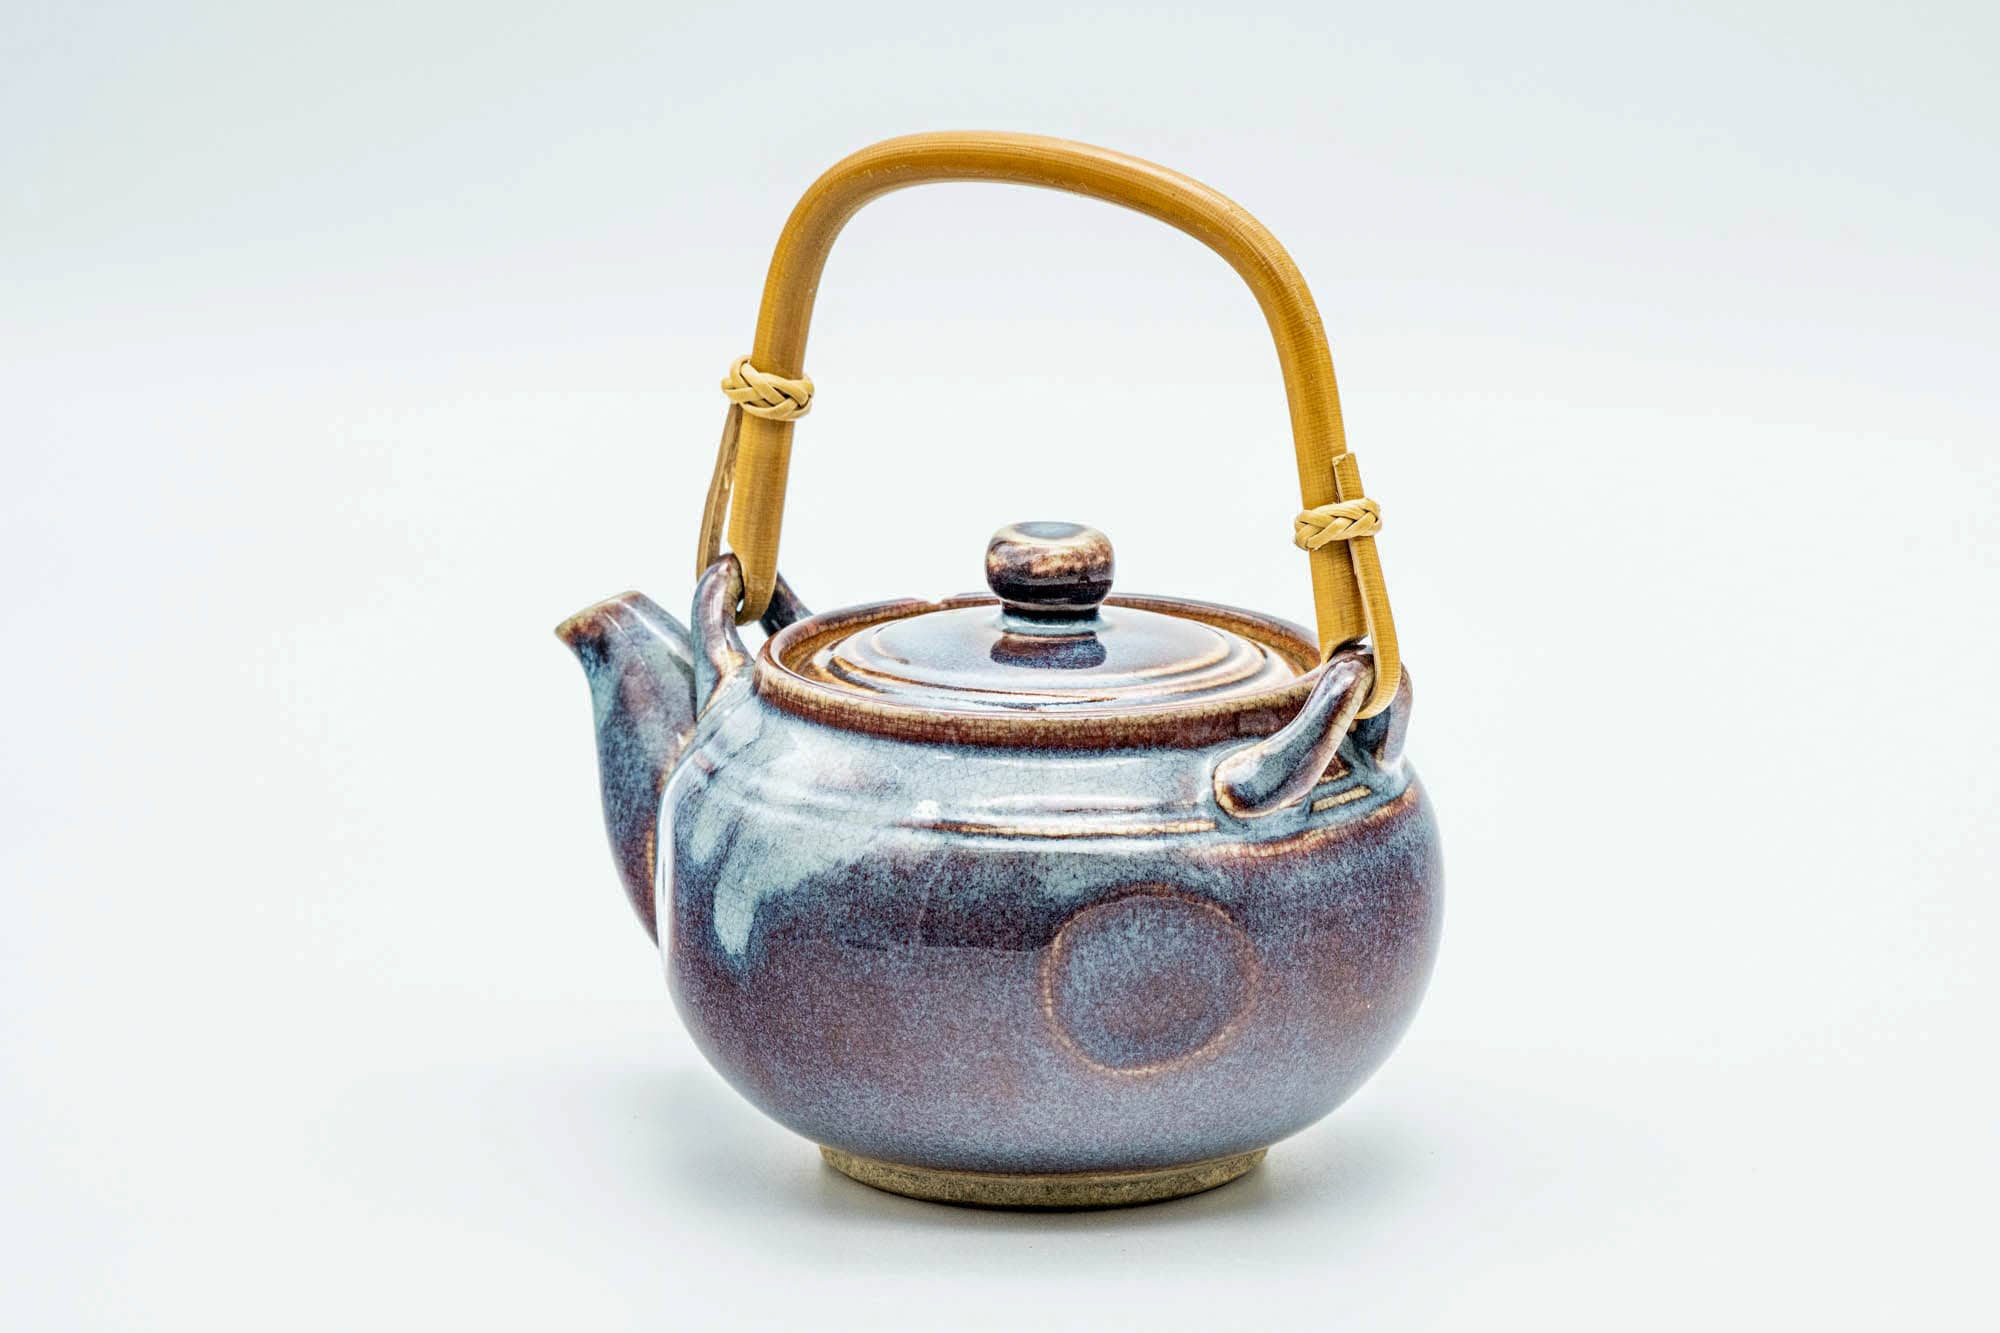 Japanese Dobin - Blue Purple Glazed Top-Handled Ceramic Filter Teapot - 340ml